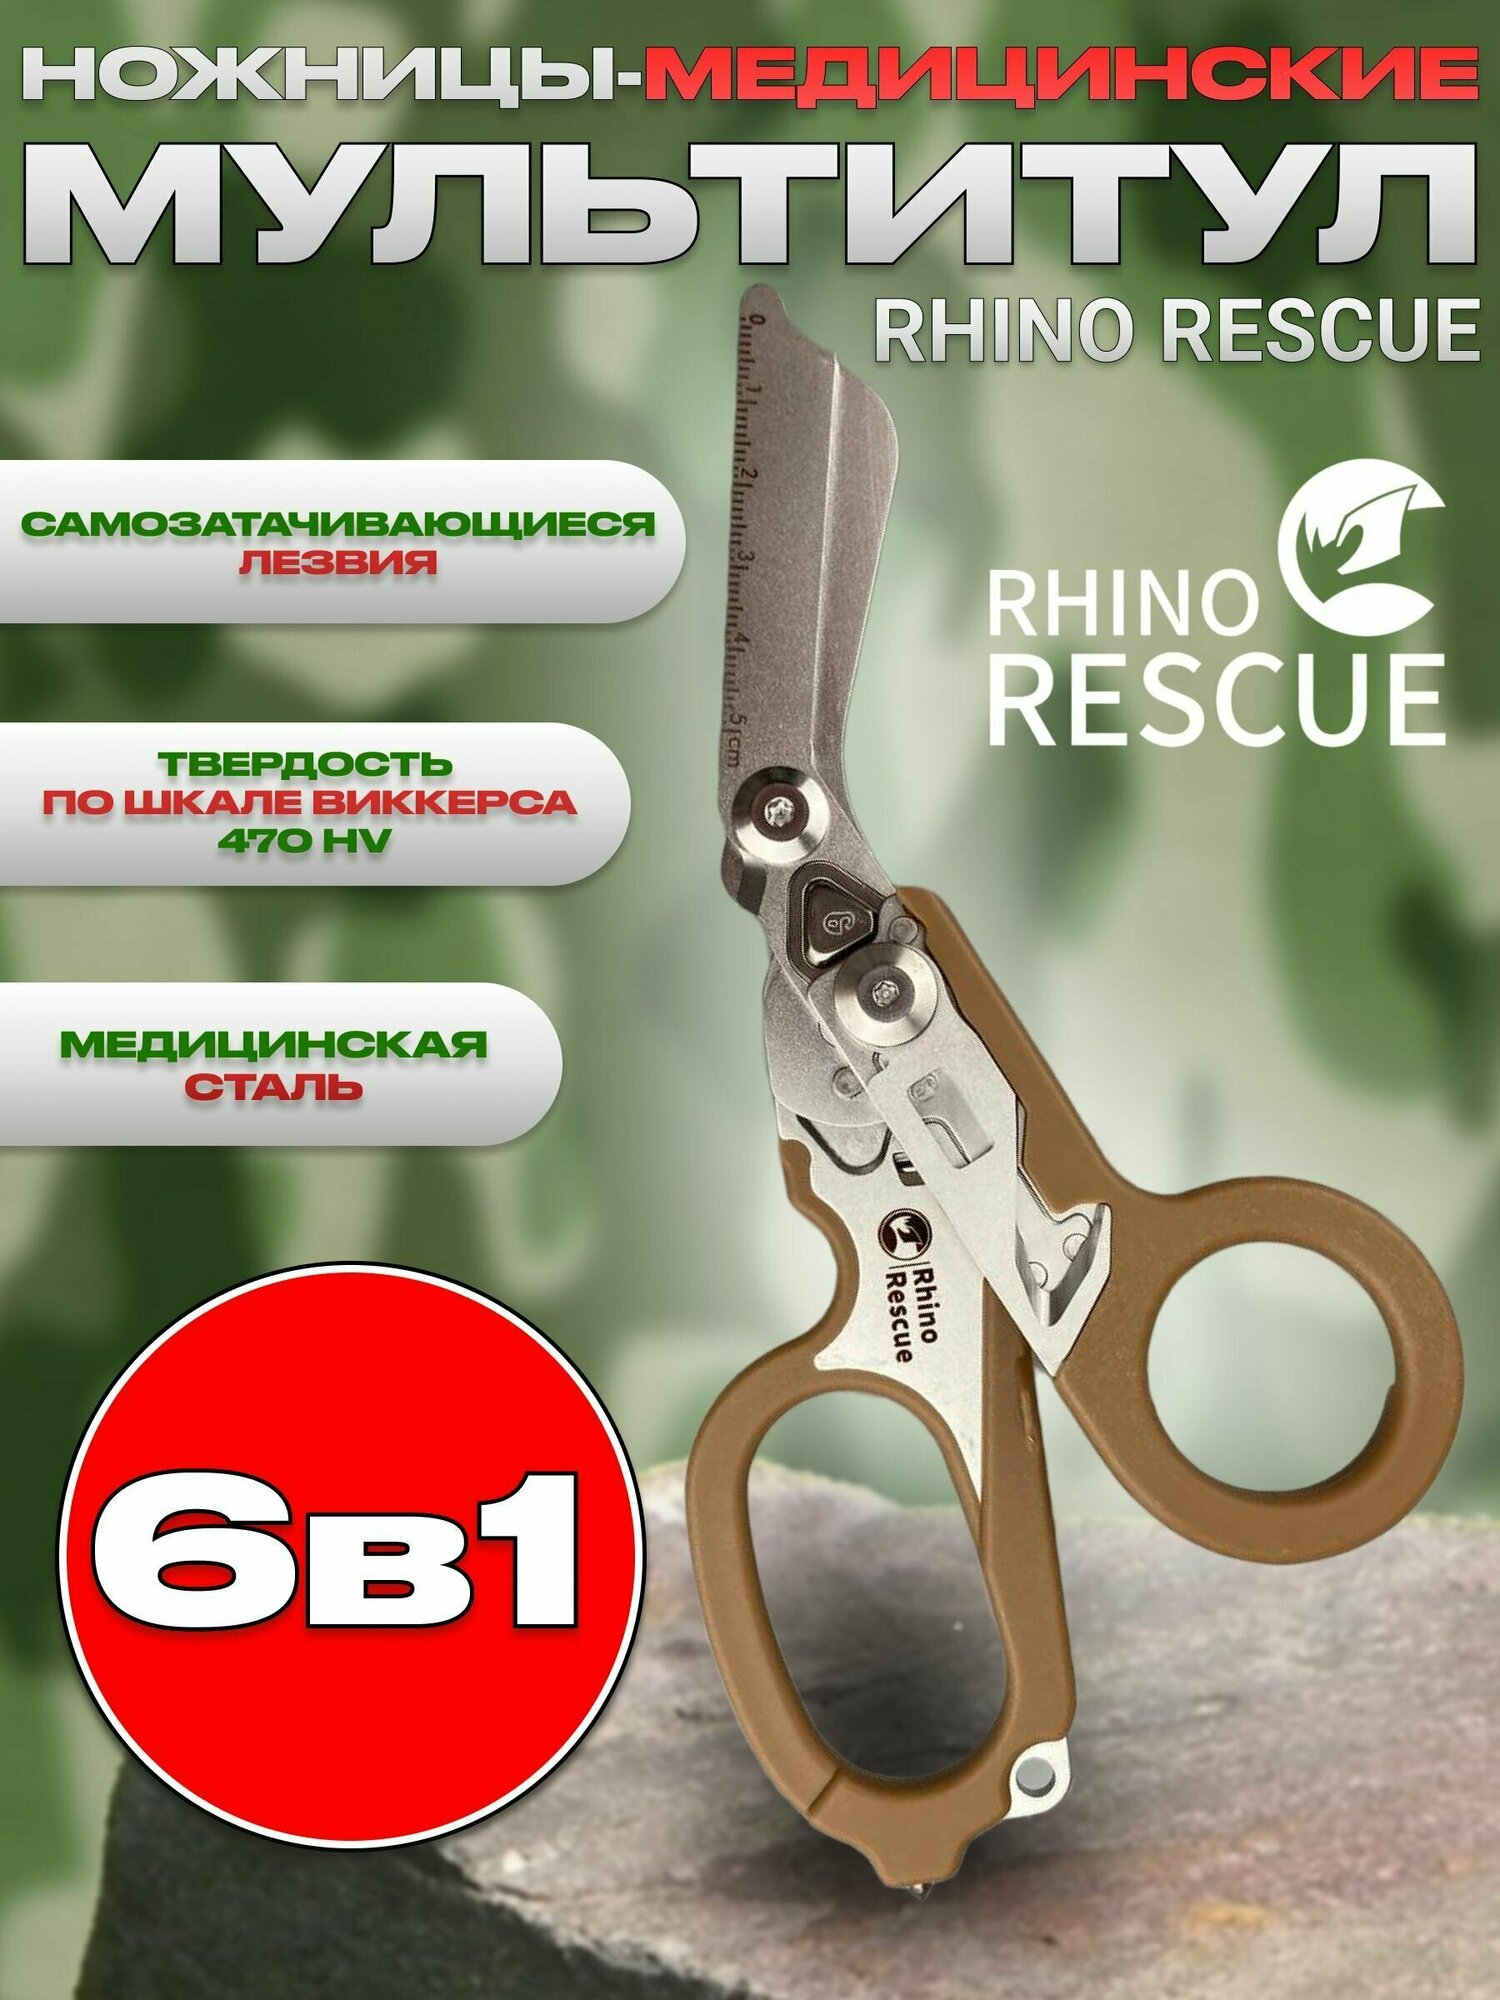 Rhino Rescue Тактические туристические ножницы мультитул 6в1 коричневые для охоты, рыбалки, туризма